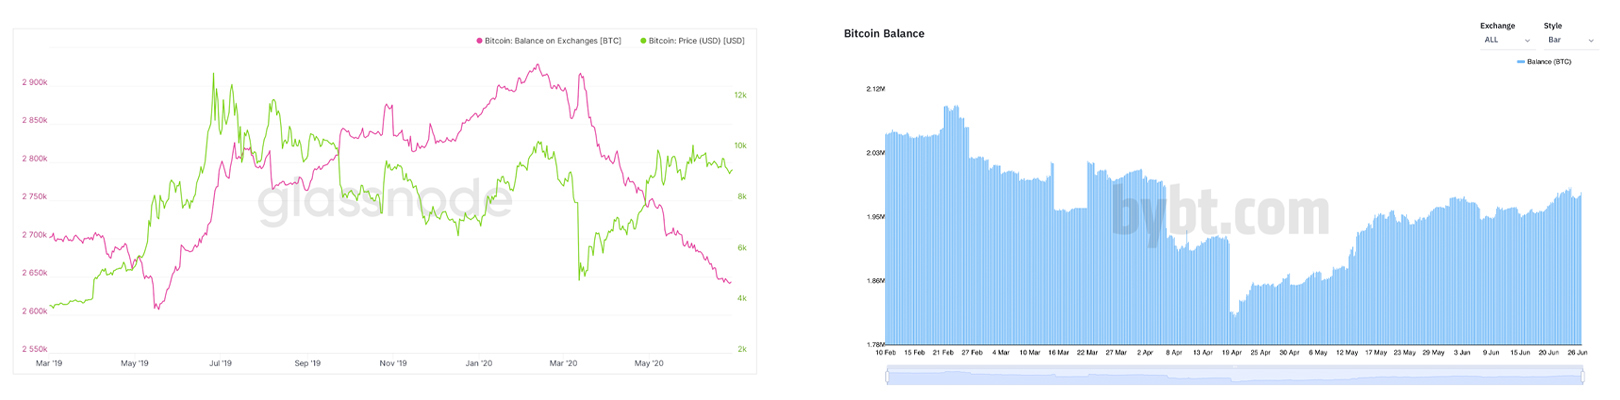 Bất chấp sự sụt giảm về giá, số Bitcoin trên các sàn giao dịch vẫn thấp hơn 28% so với năm ngoái